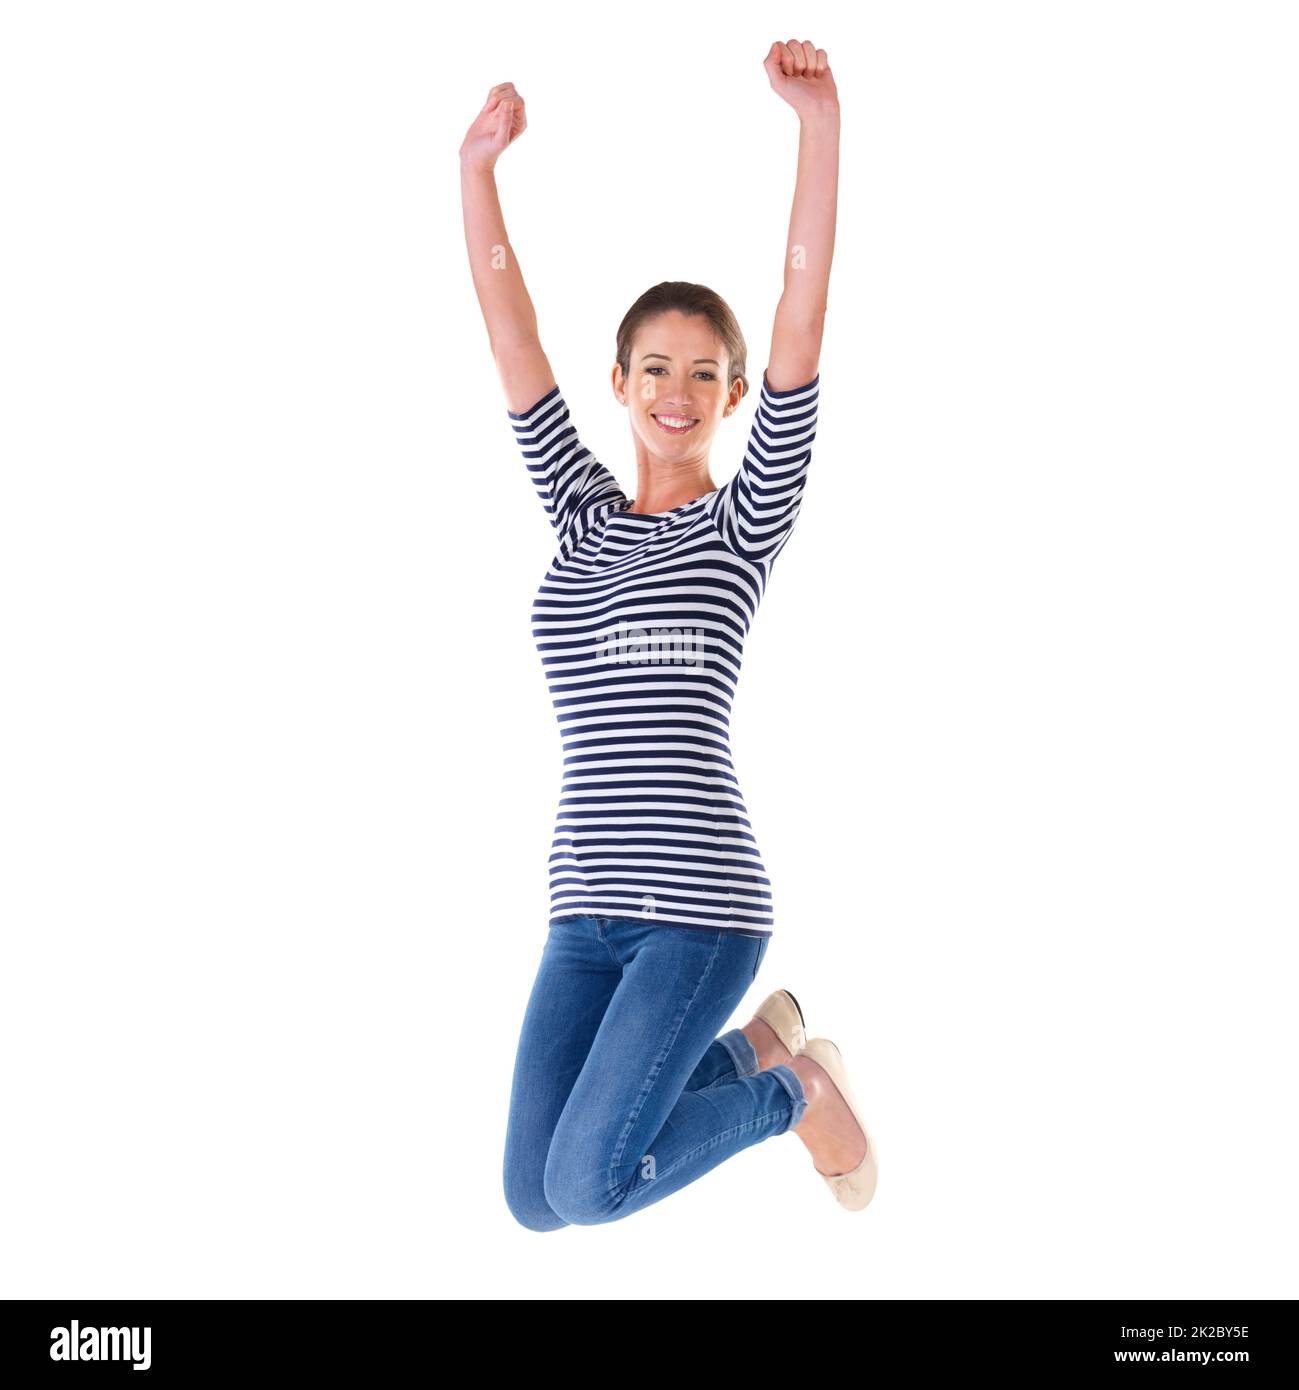 Springen vor Freude. Studioaufnahme einer ekstatischen jungen Frau, die isoliert auf Weiß in die Luft springt. Stockfoto